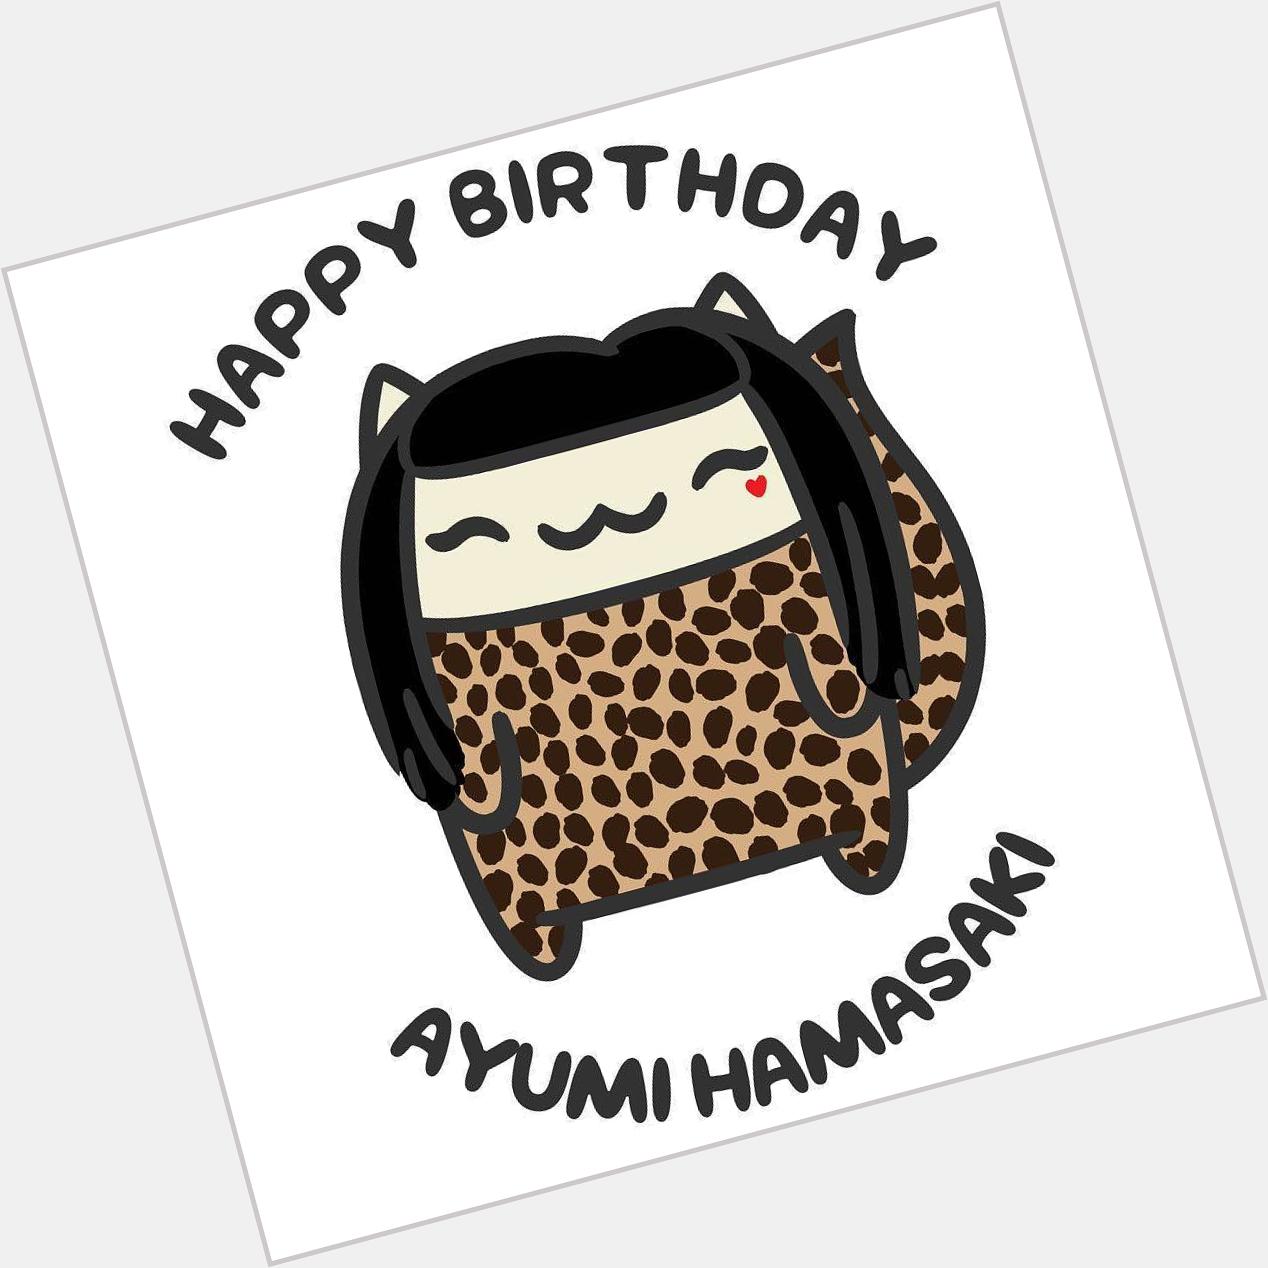 Happy Birthday, Ayumi Hamasaki!  